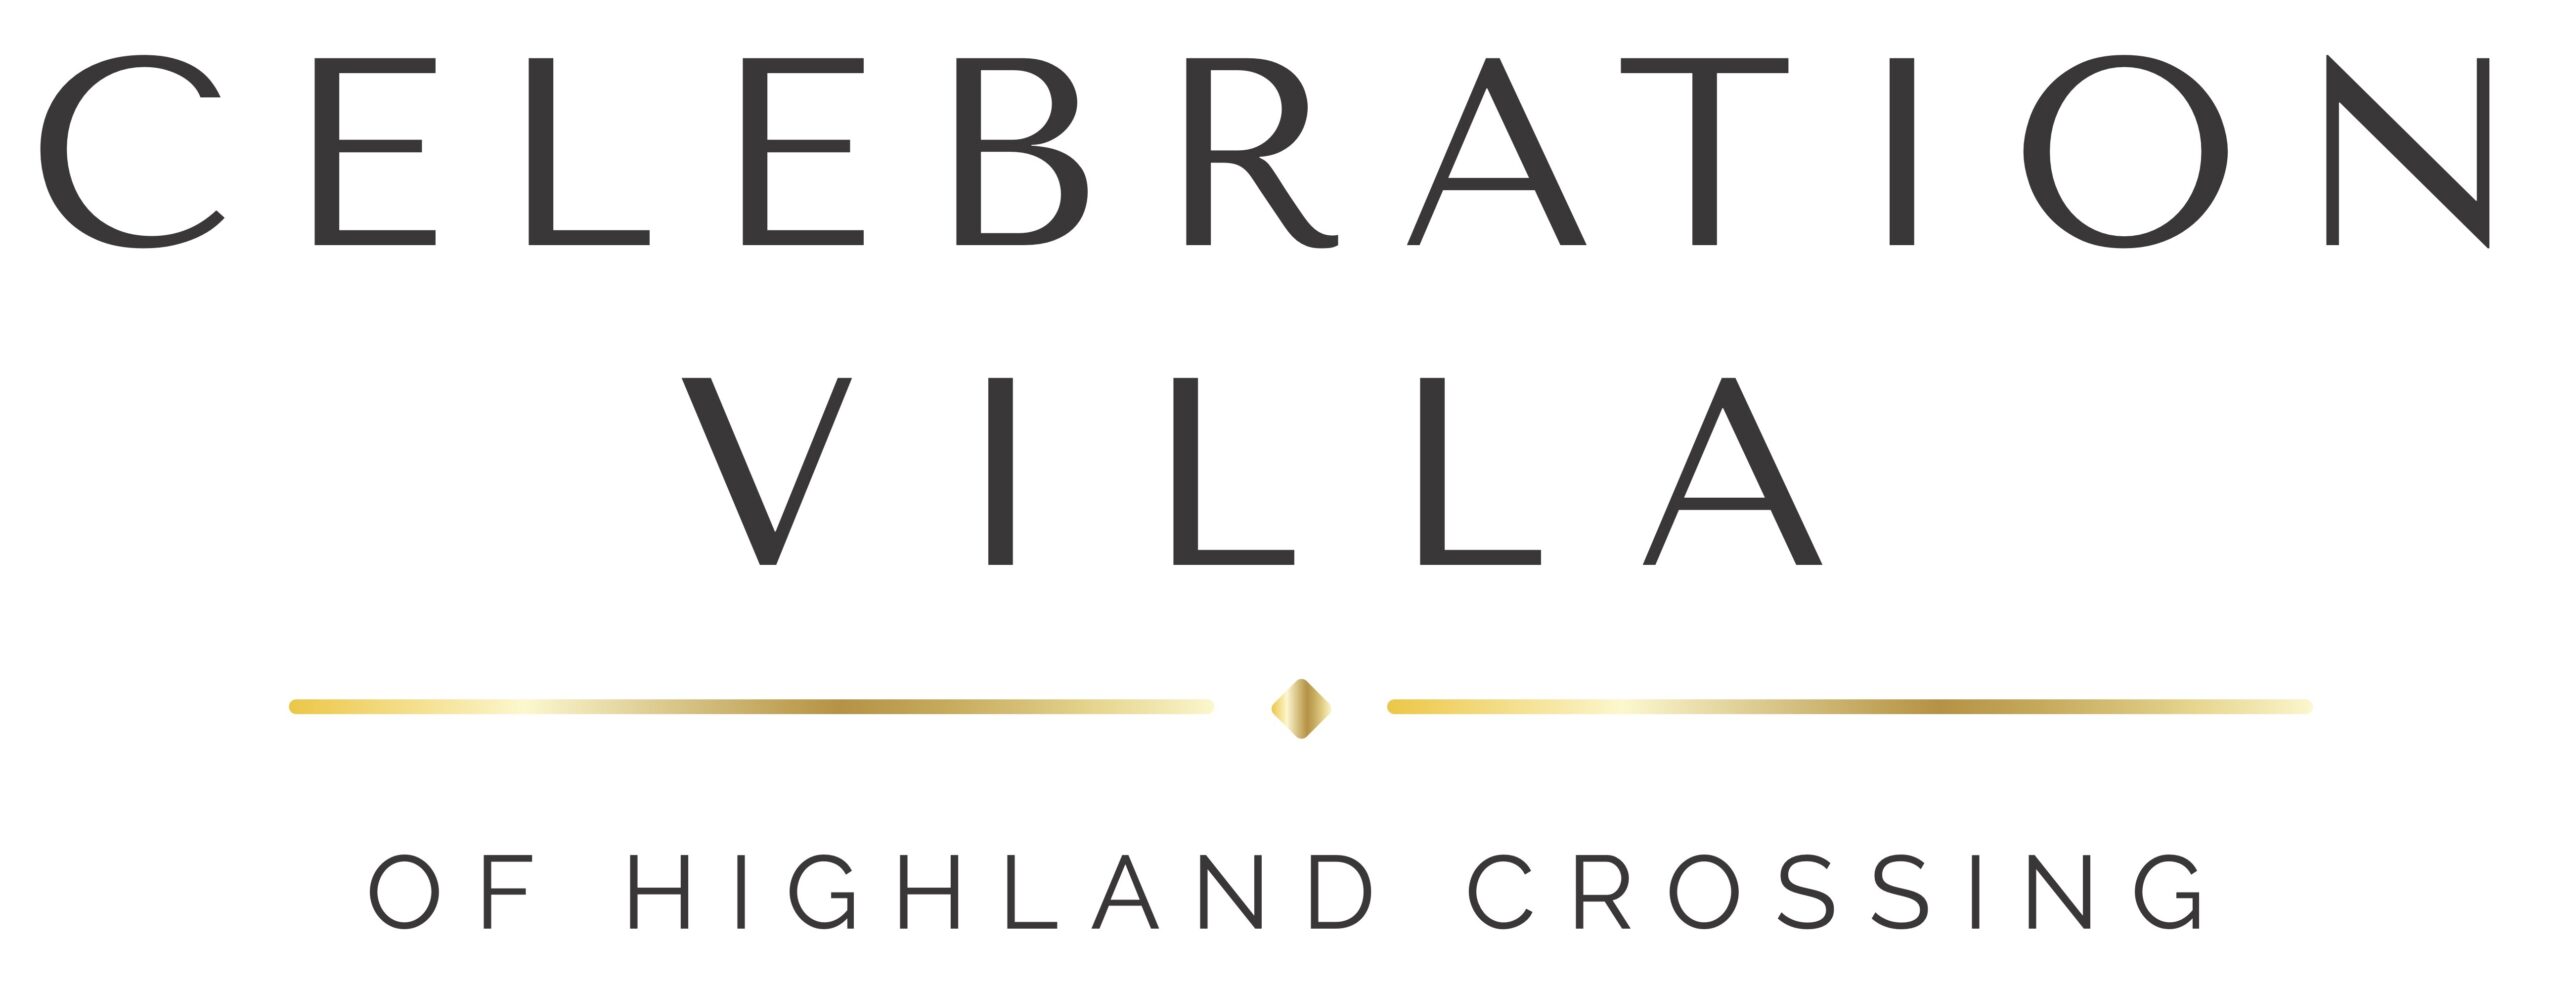 Celebration Villa of Highland Crossing 